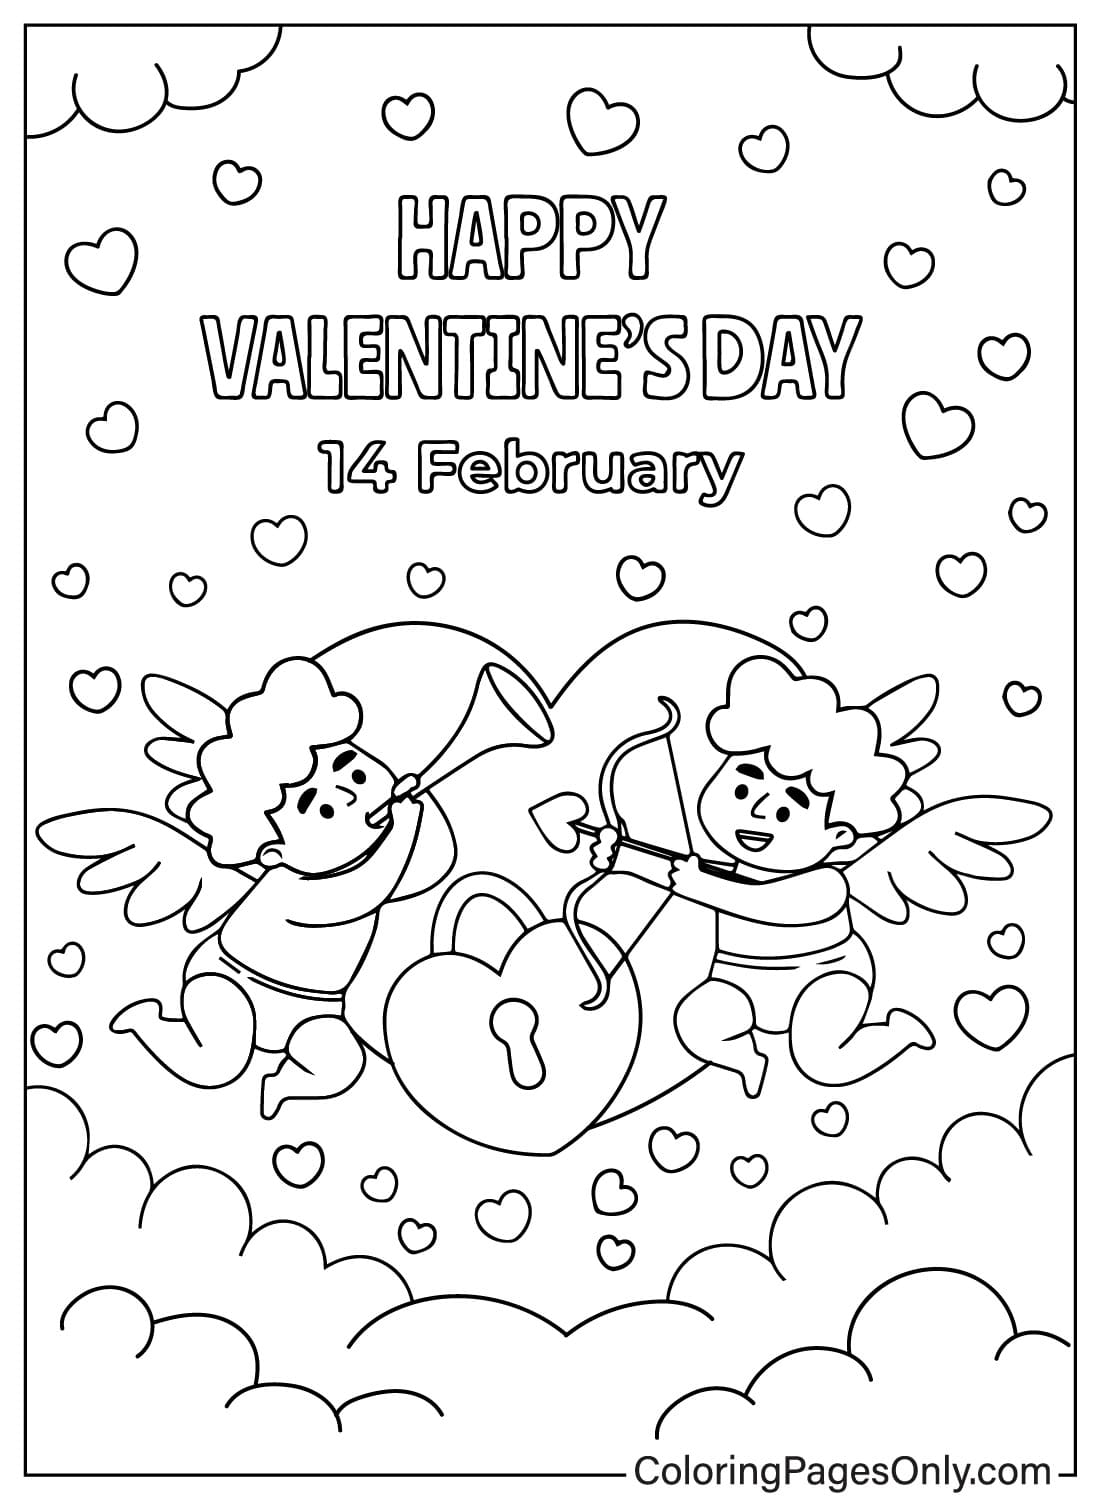 Página para colorear de Cupido del día de San Valentín gratis de Cupido